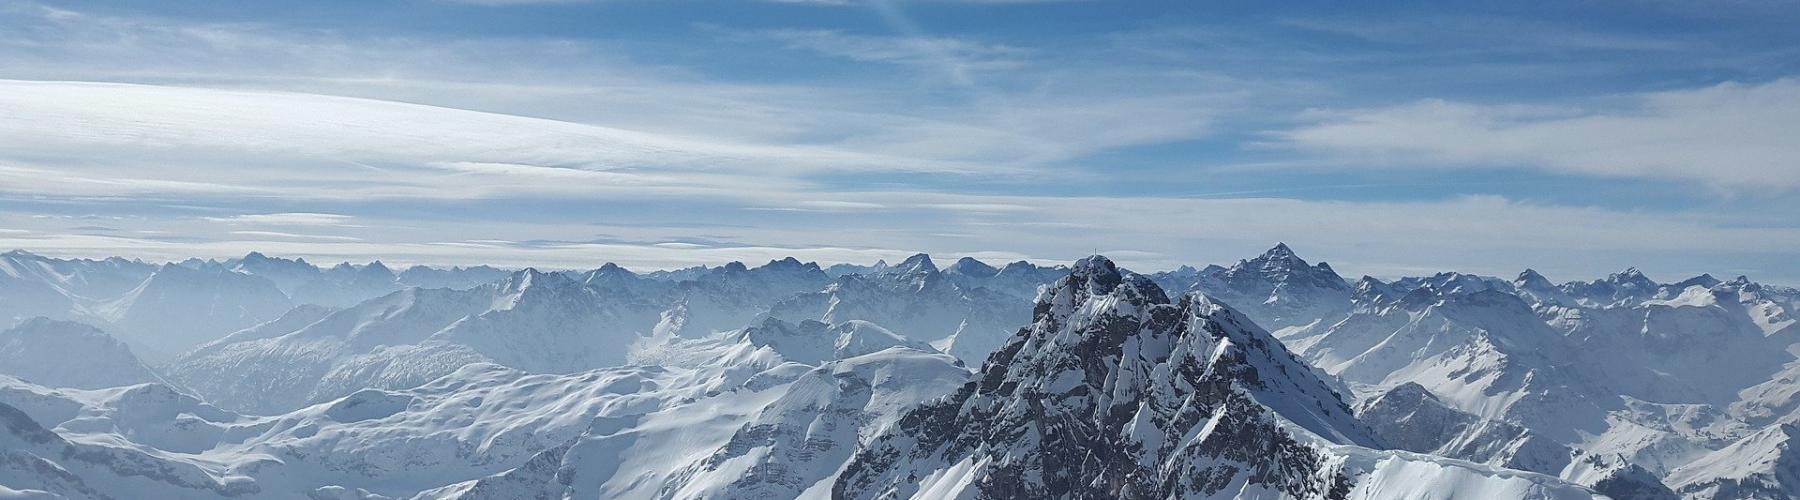 sommets de montagnes enneigées, Alpes